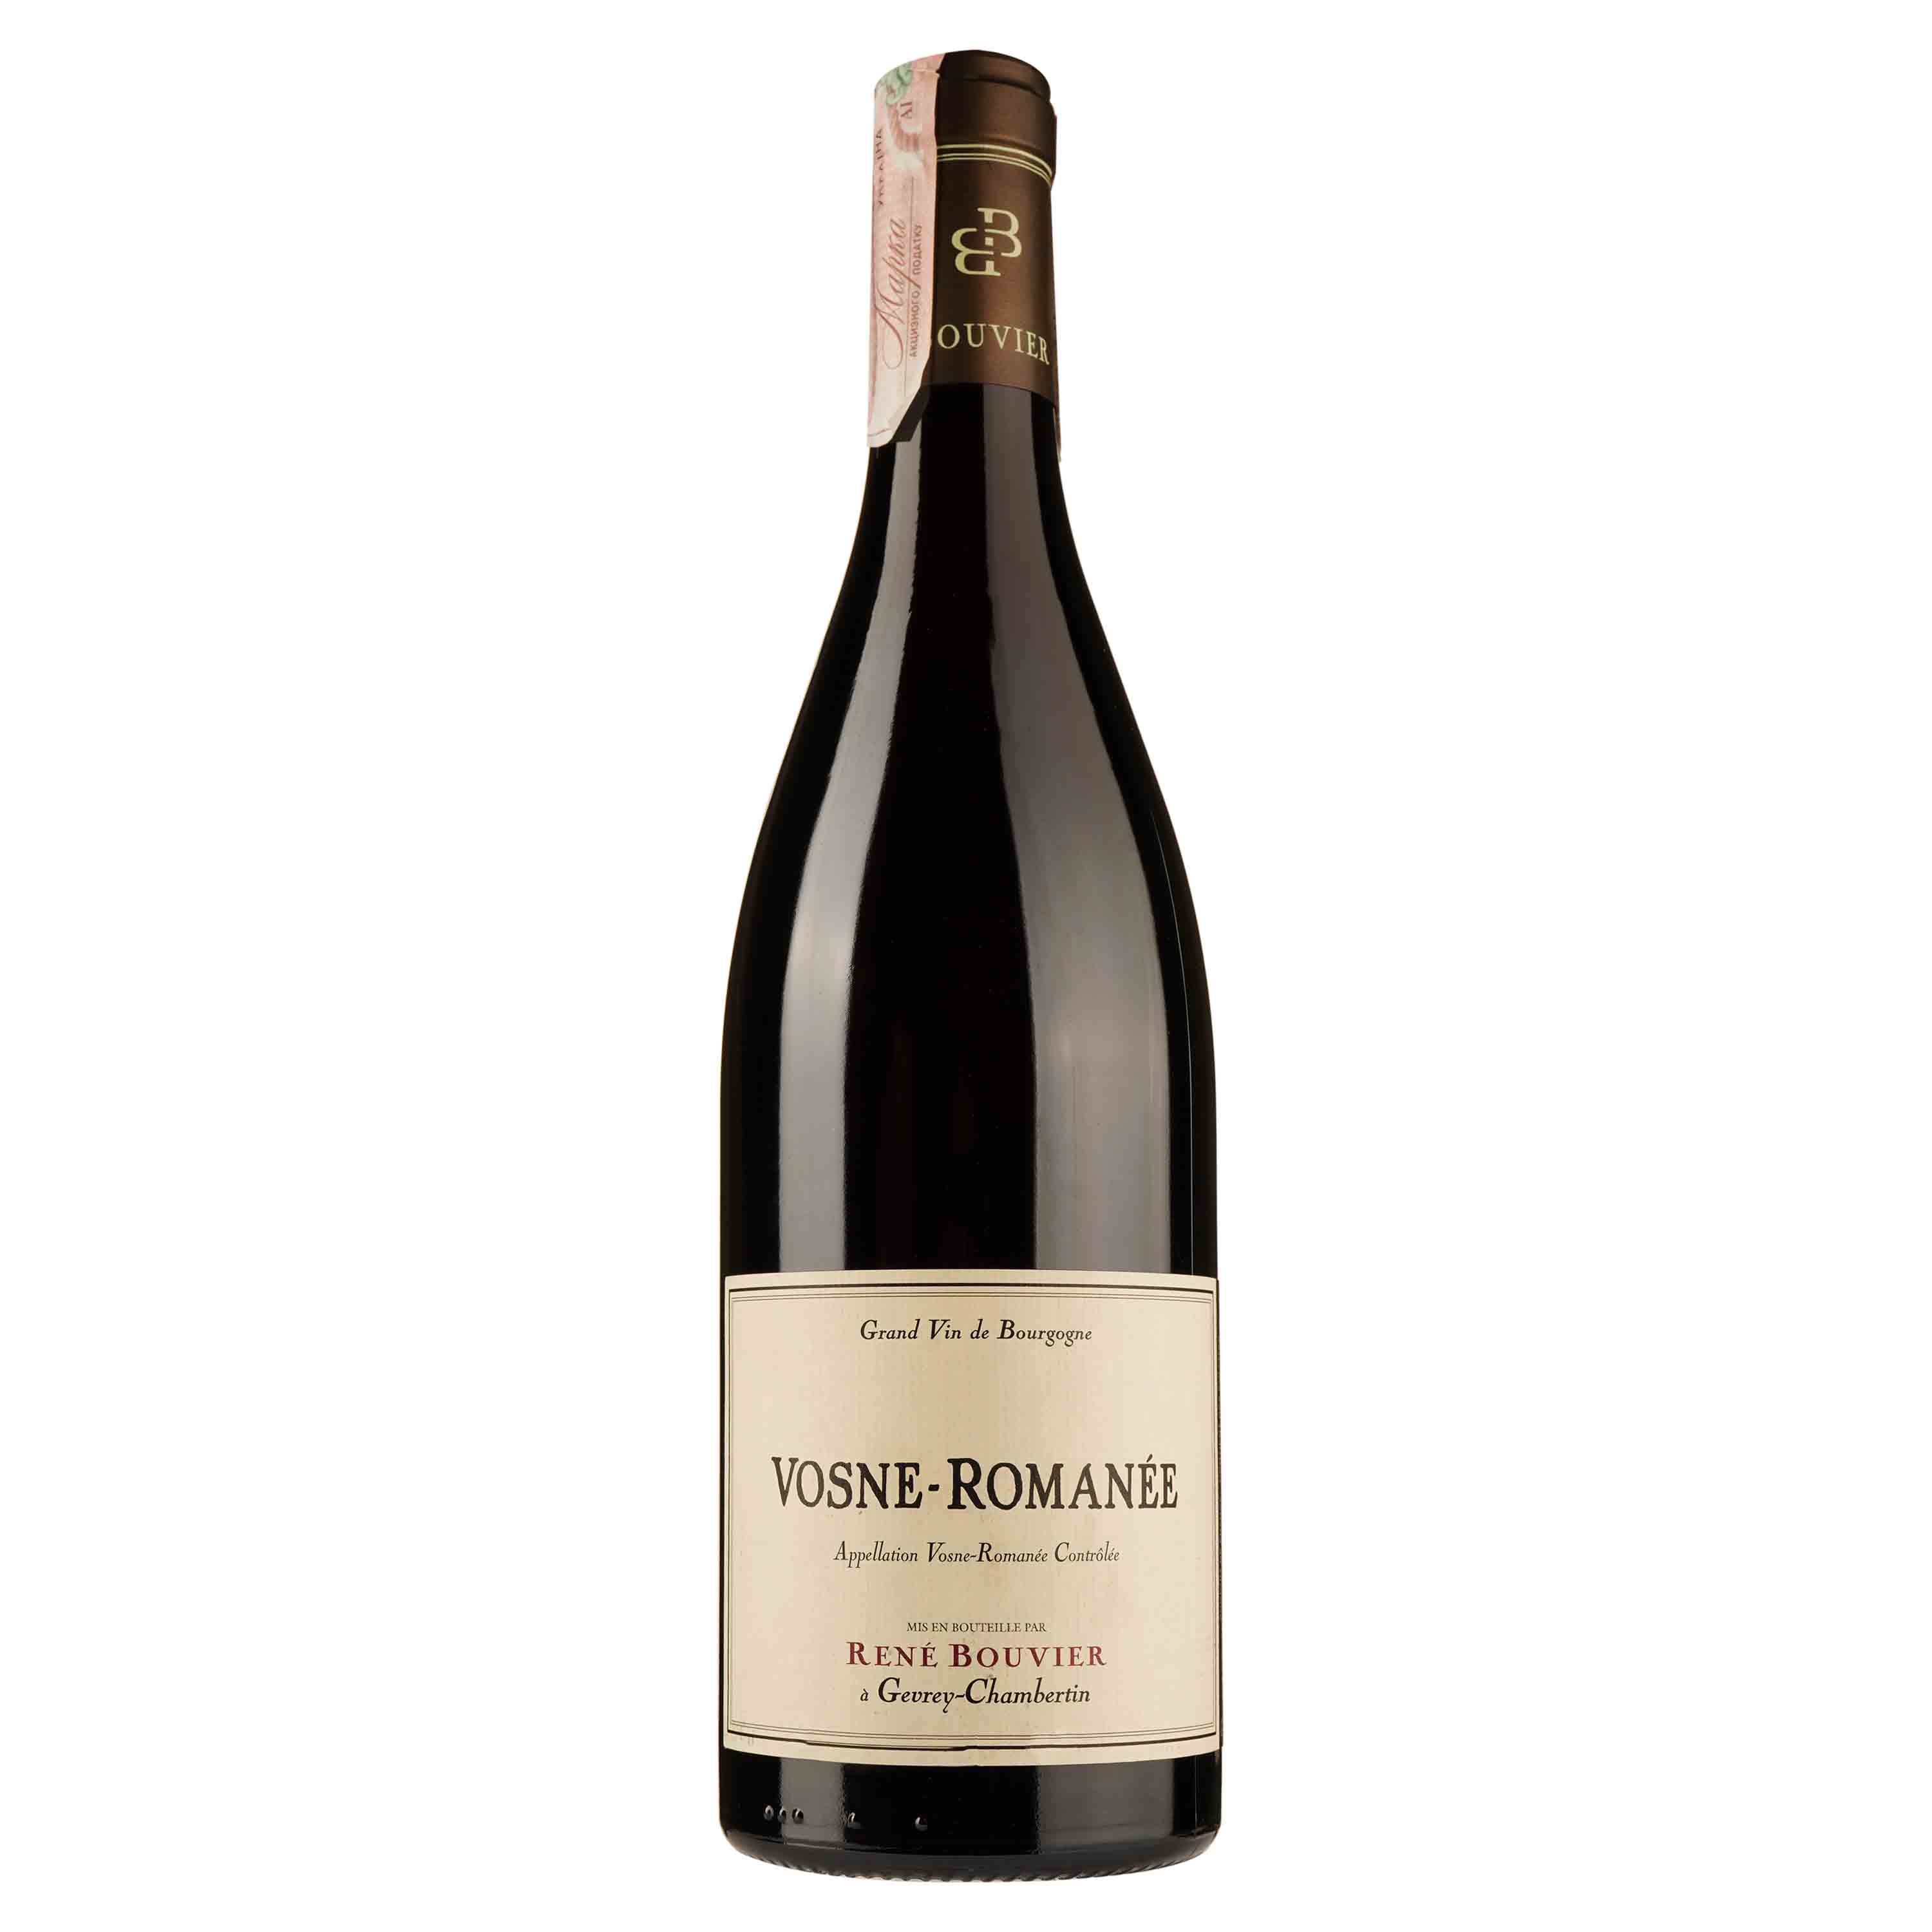 Вино Domaine Rene Bouvier Vosne-Romanee 2016 АОС/AOP, 13%, 0,75 л (776103) - фото 1